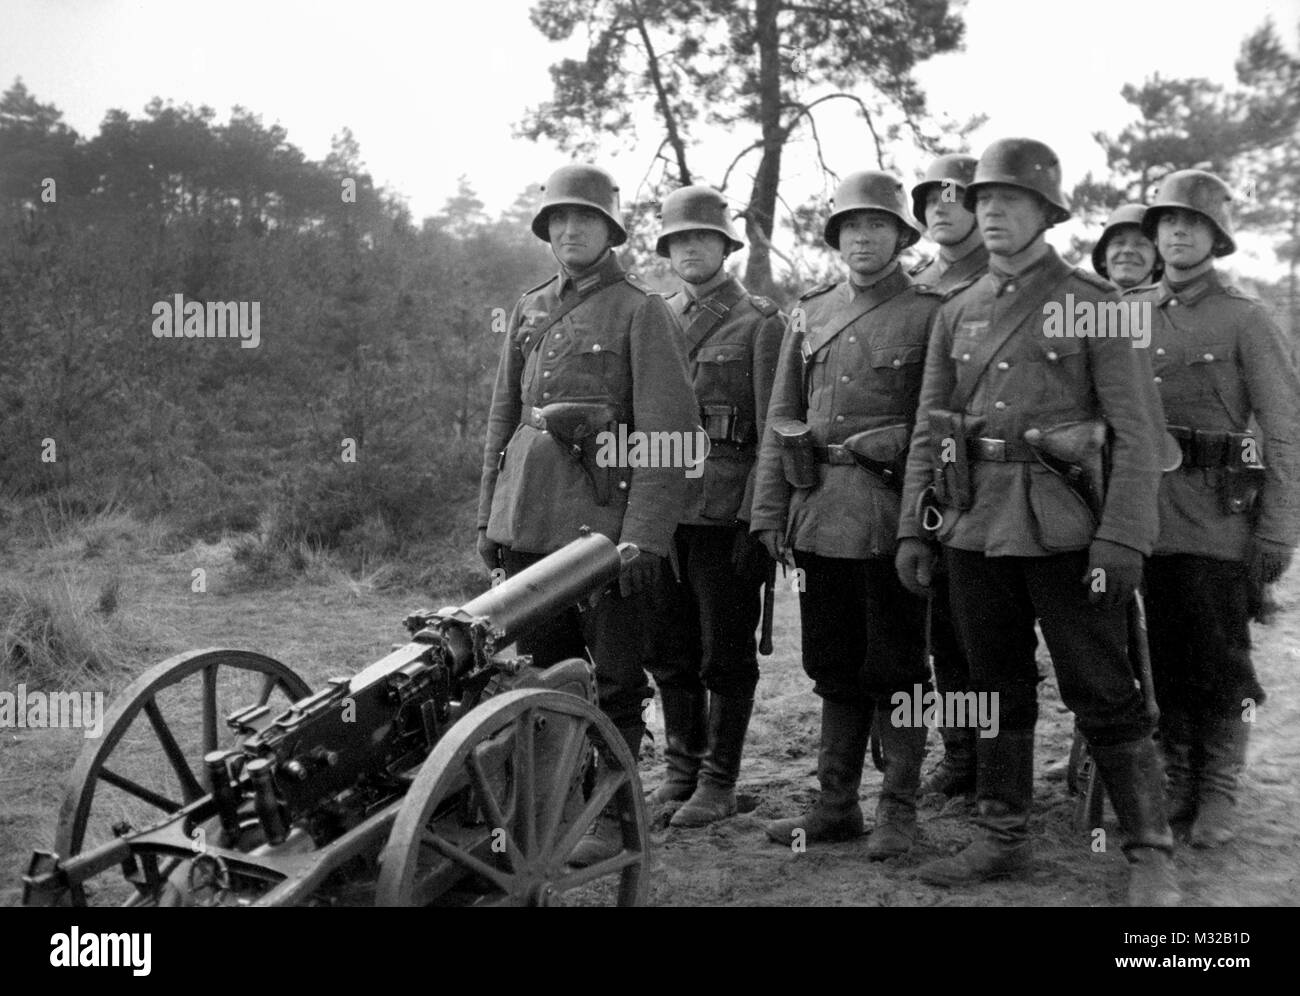 L'unité de formation d'infanterie allemande se distingue par leur arme, ca. 1938. Banque D'Images